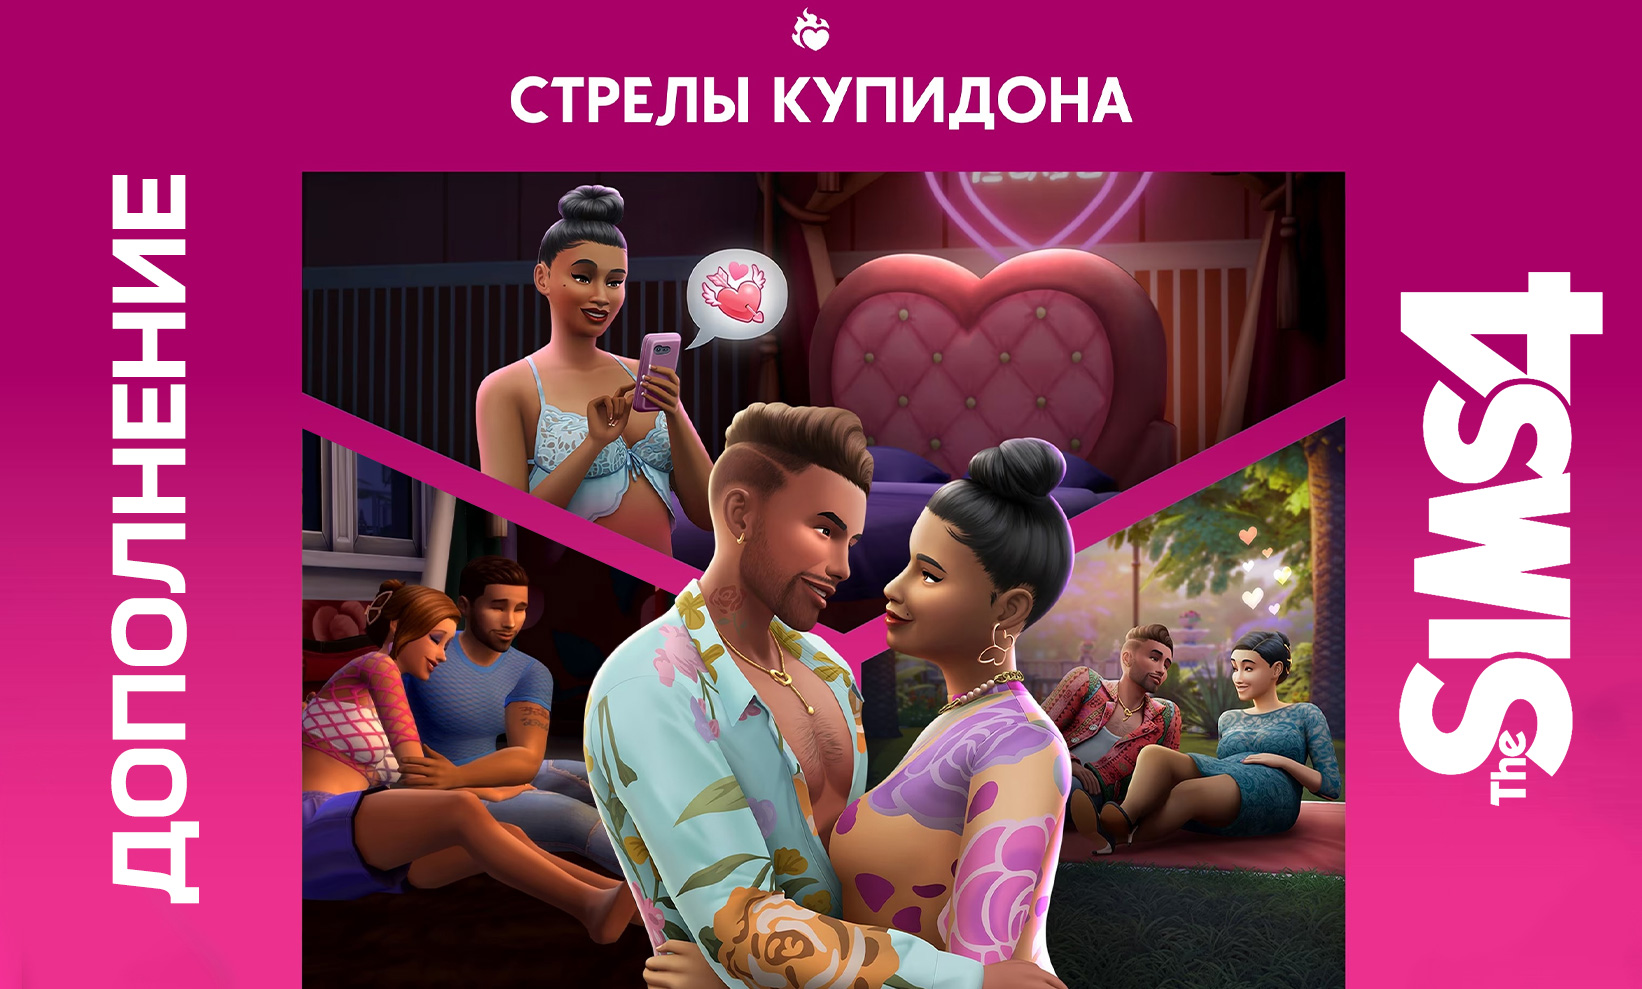 Обзор дополнения The Sims 4: Стрелы купидона: мотели, приложение для знакомств, новые предметы и взаимодействия персонажей